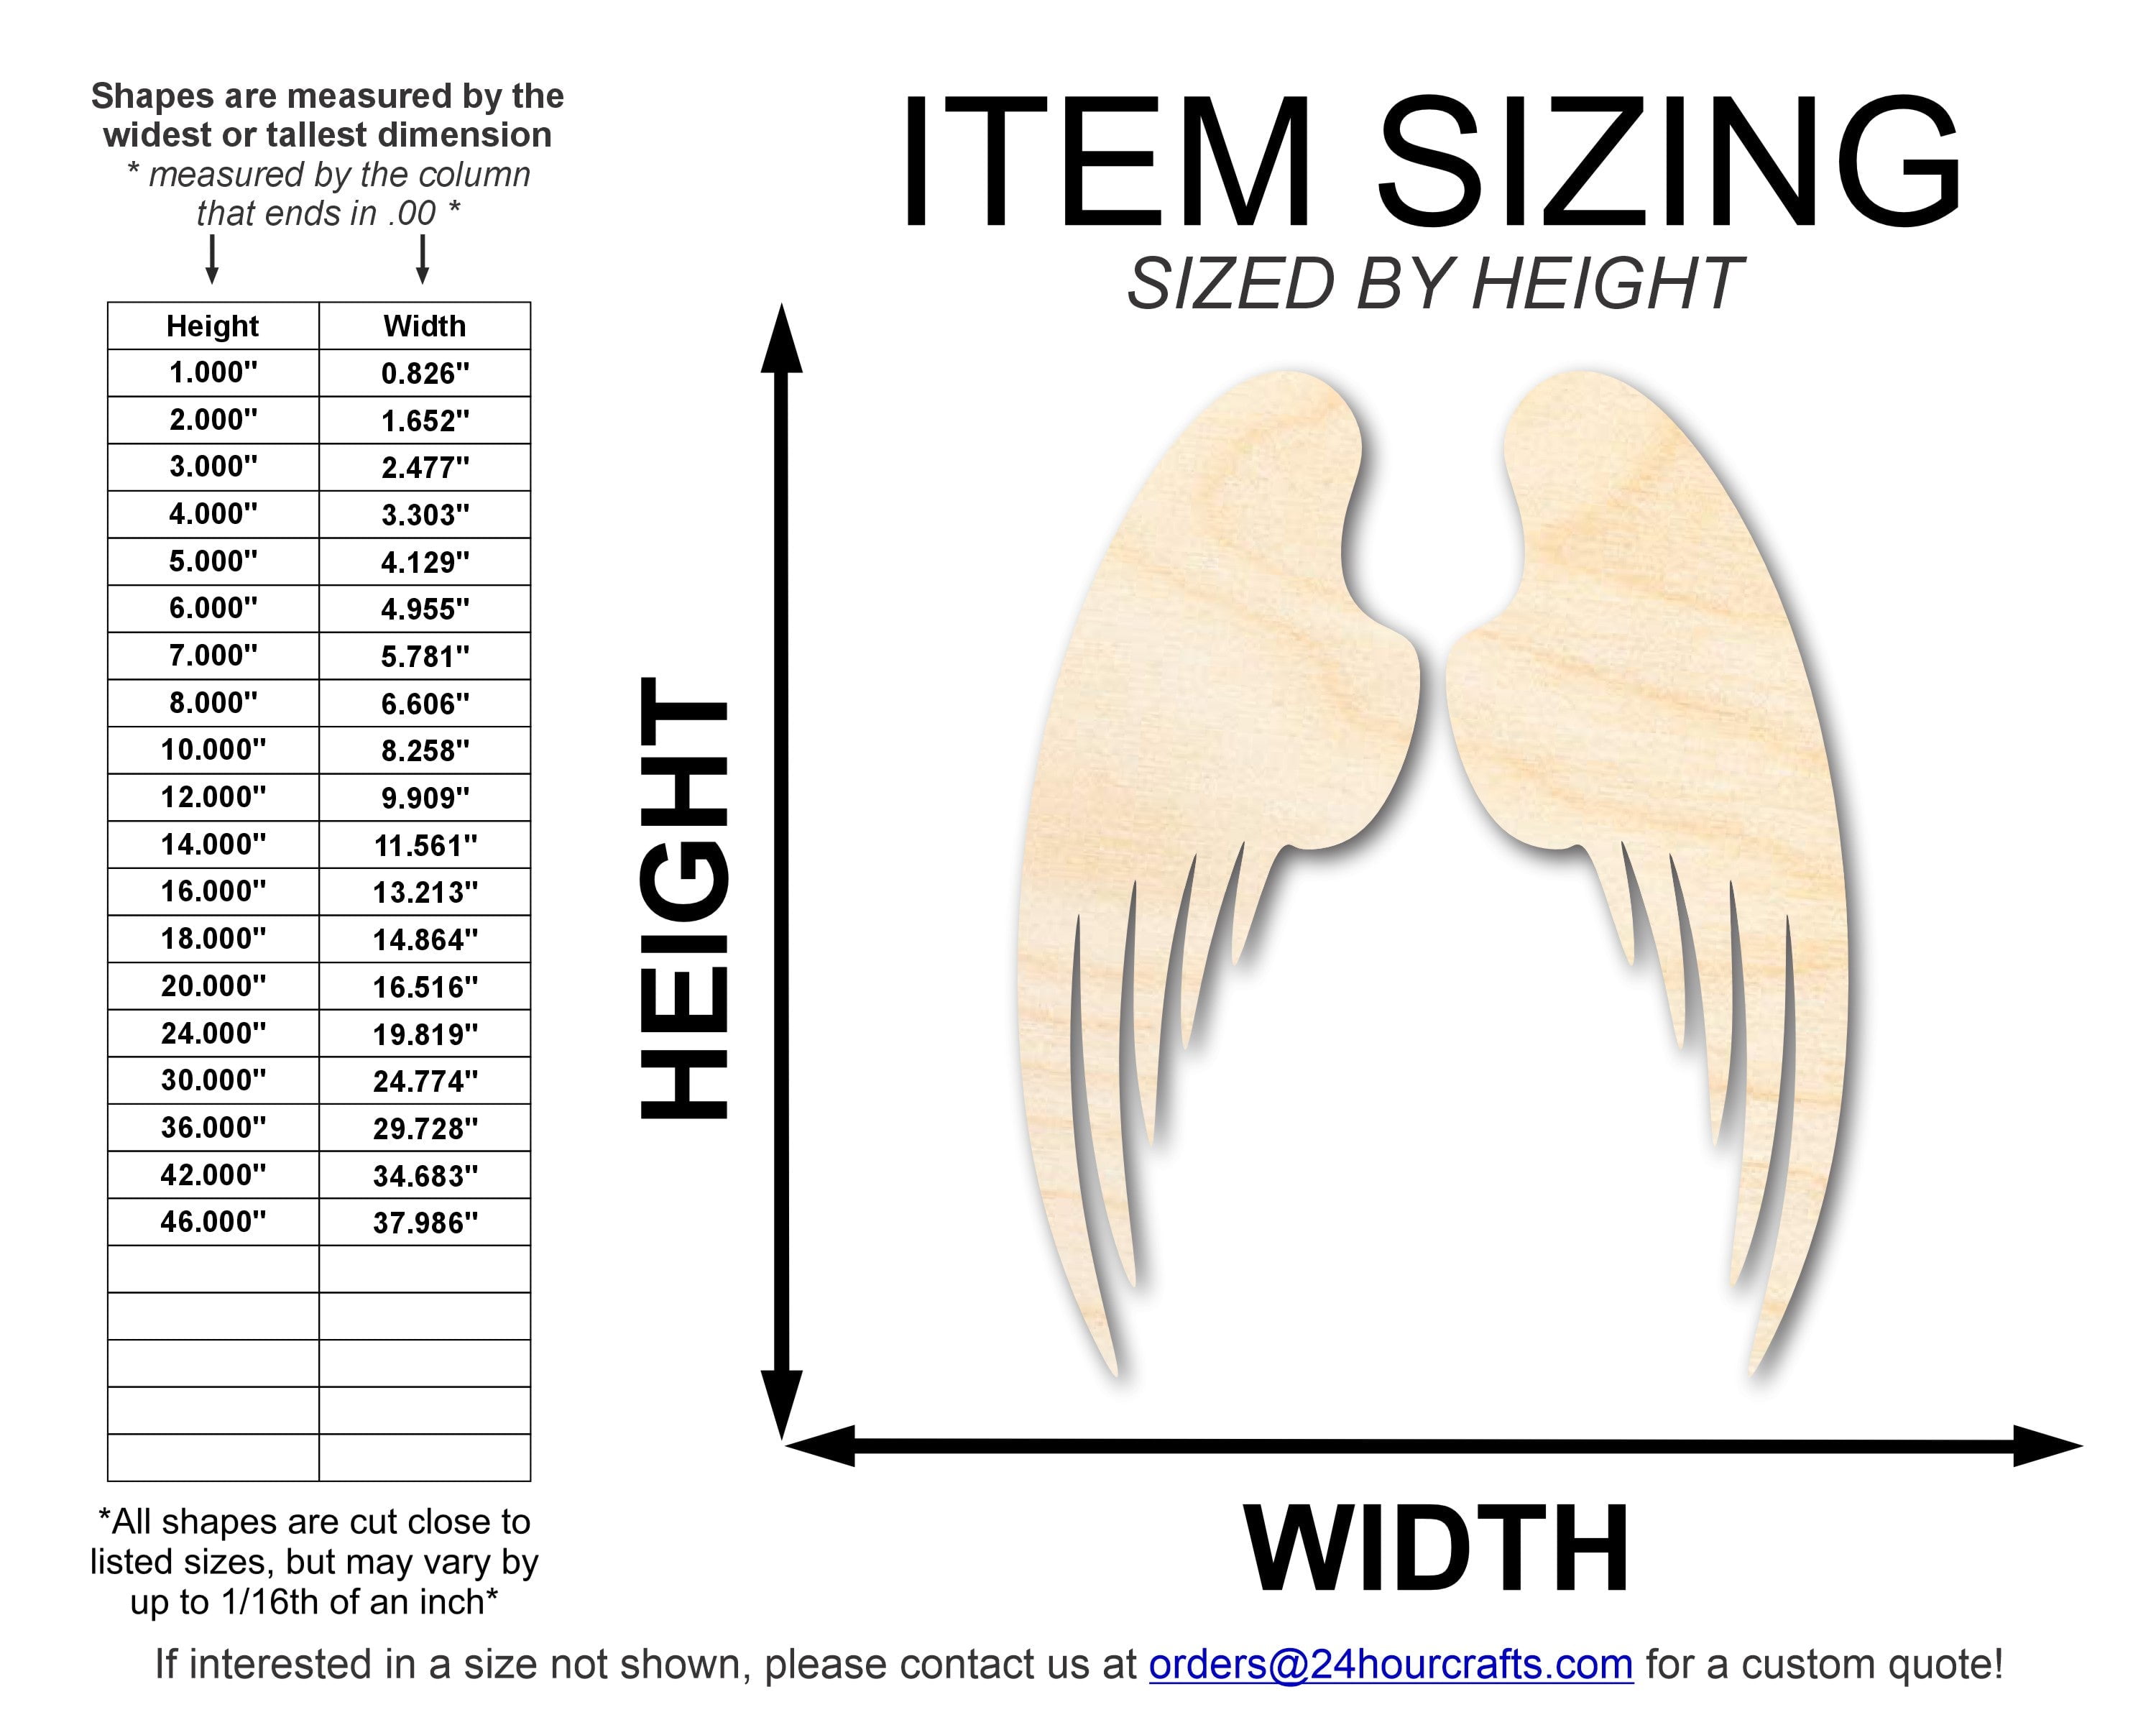 Unfinished Wood Angel Wings, 2 Wings, DIY Angel Craft